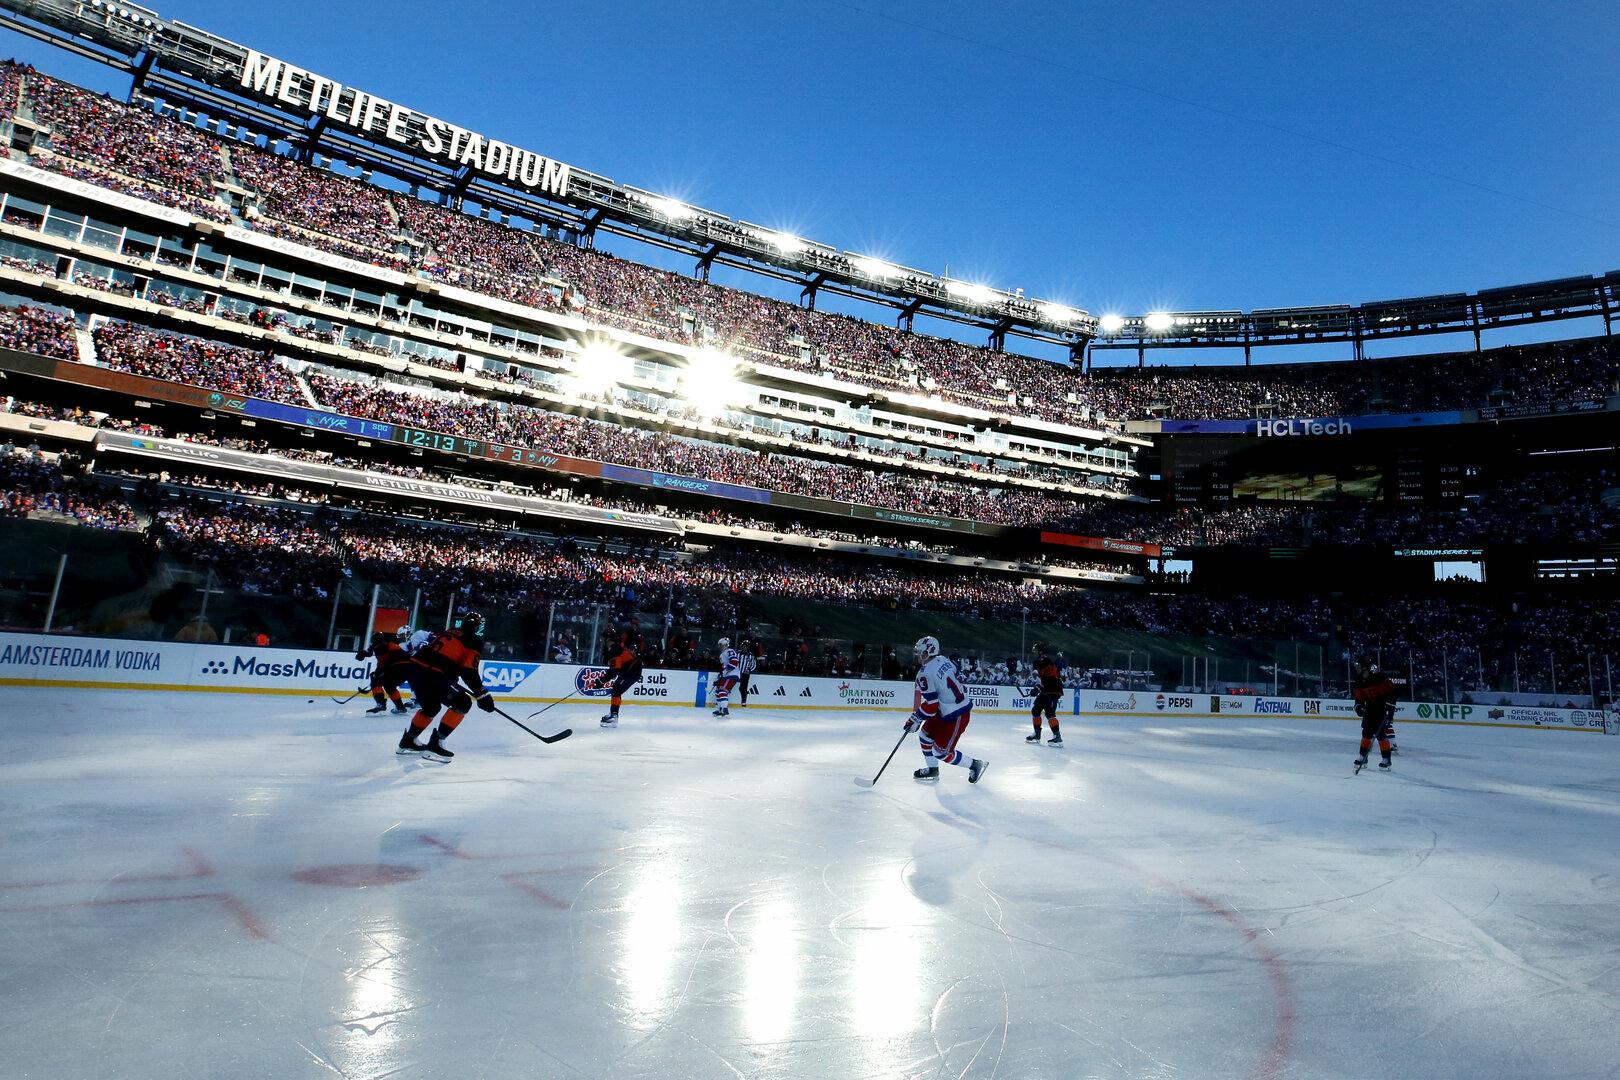 Spektakel in New York: 80.000 Fans beim Eishockey-Derby